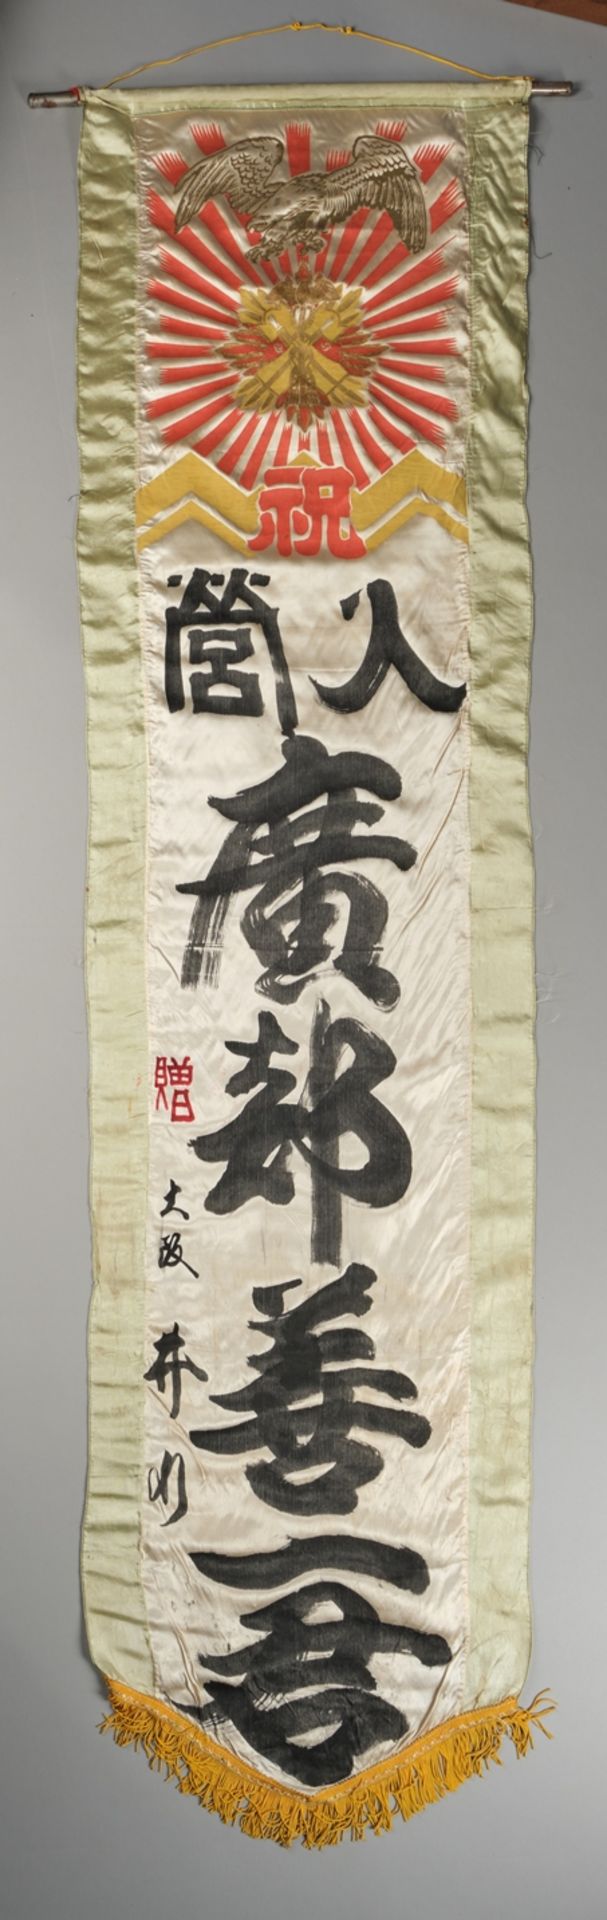 Konvolut 9 Hängerollen, China/Japan, 20. Jh., Kalligrafien, Steinabreibungen, u.a., diverse Formate - Bild 8 aus 10